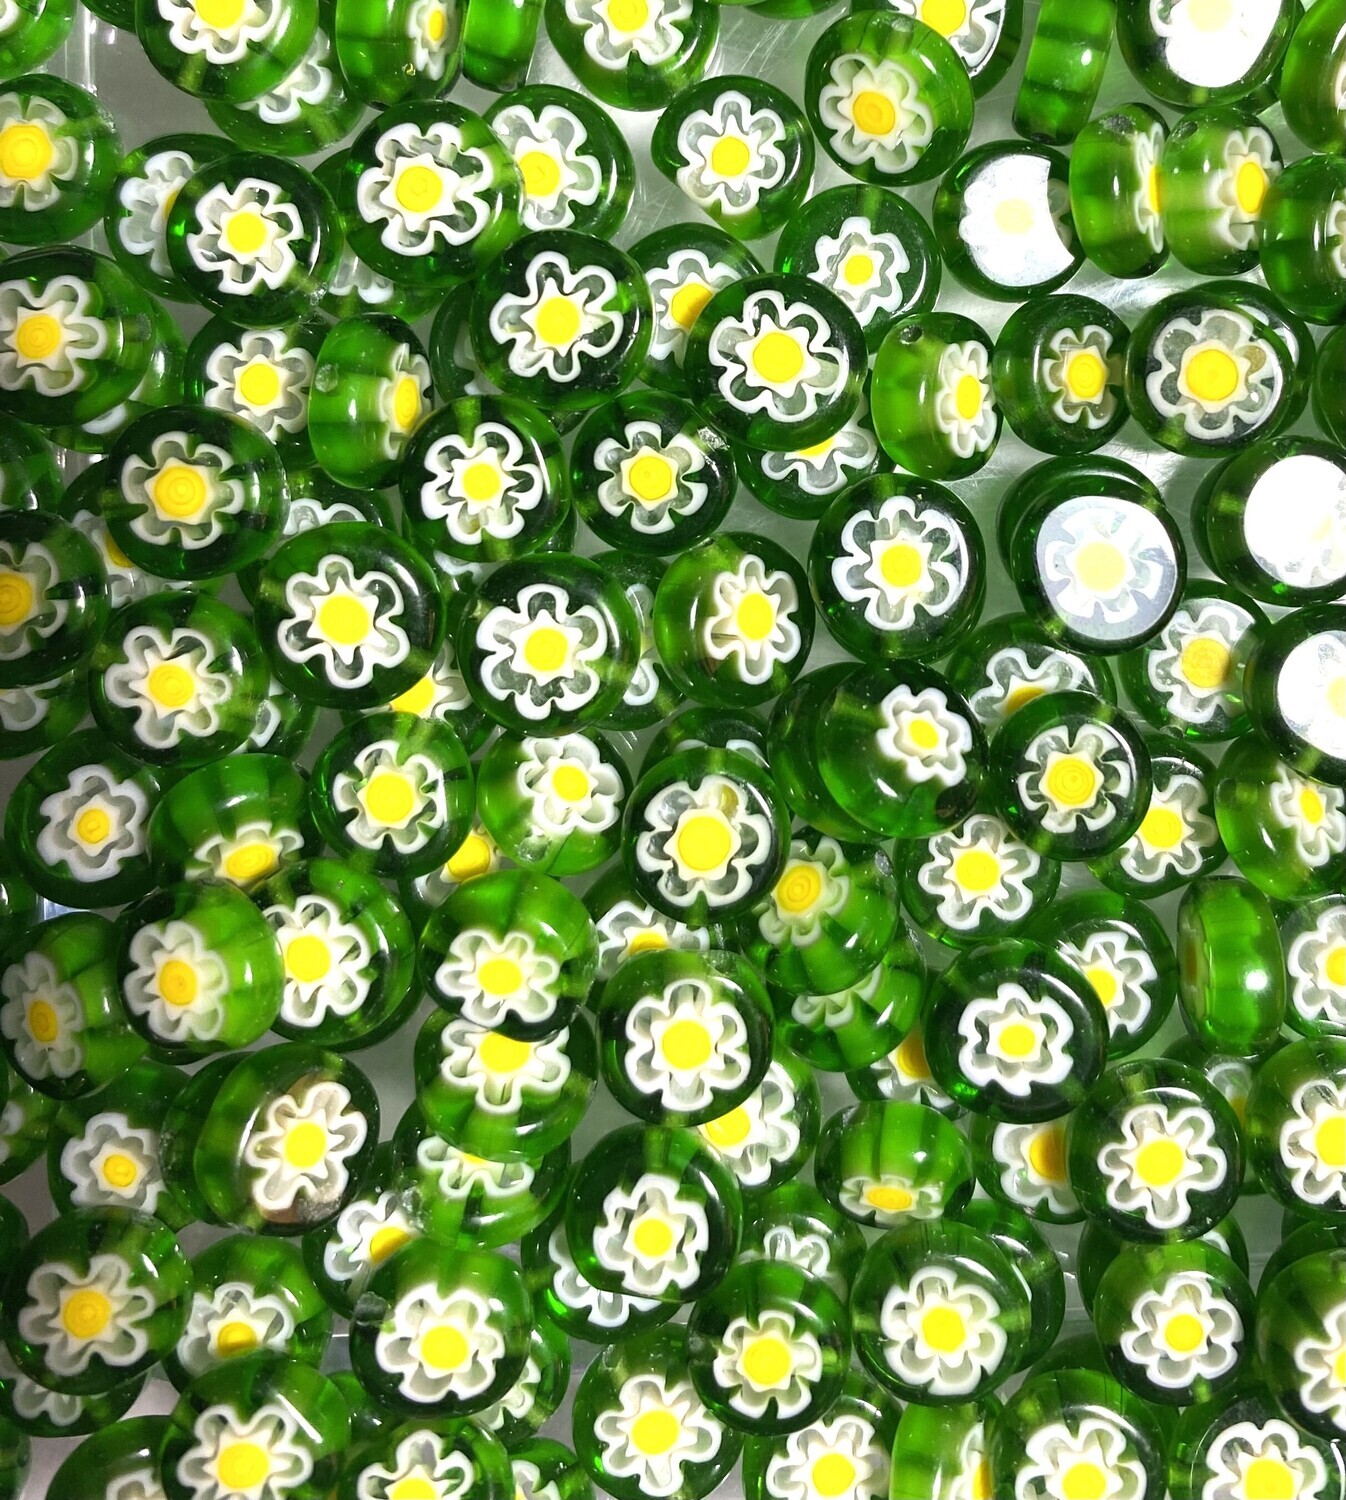 25 Green & Yellow Millefiori Glass Beads 8mm